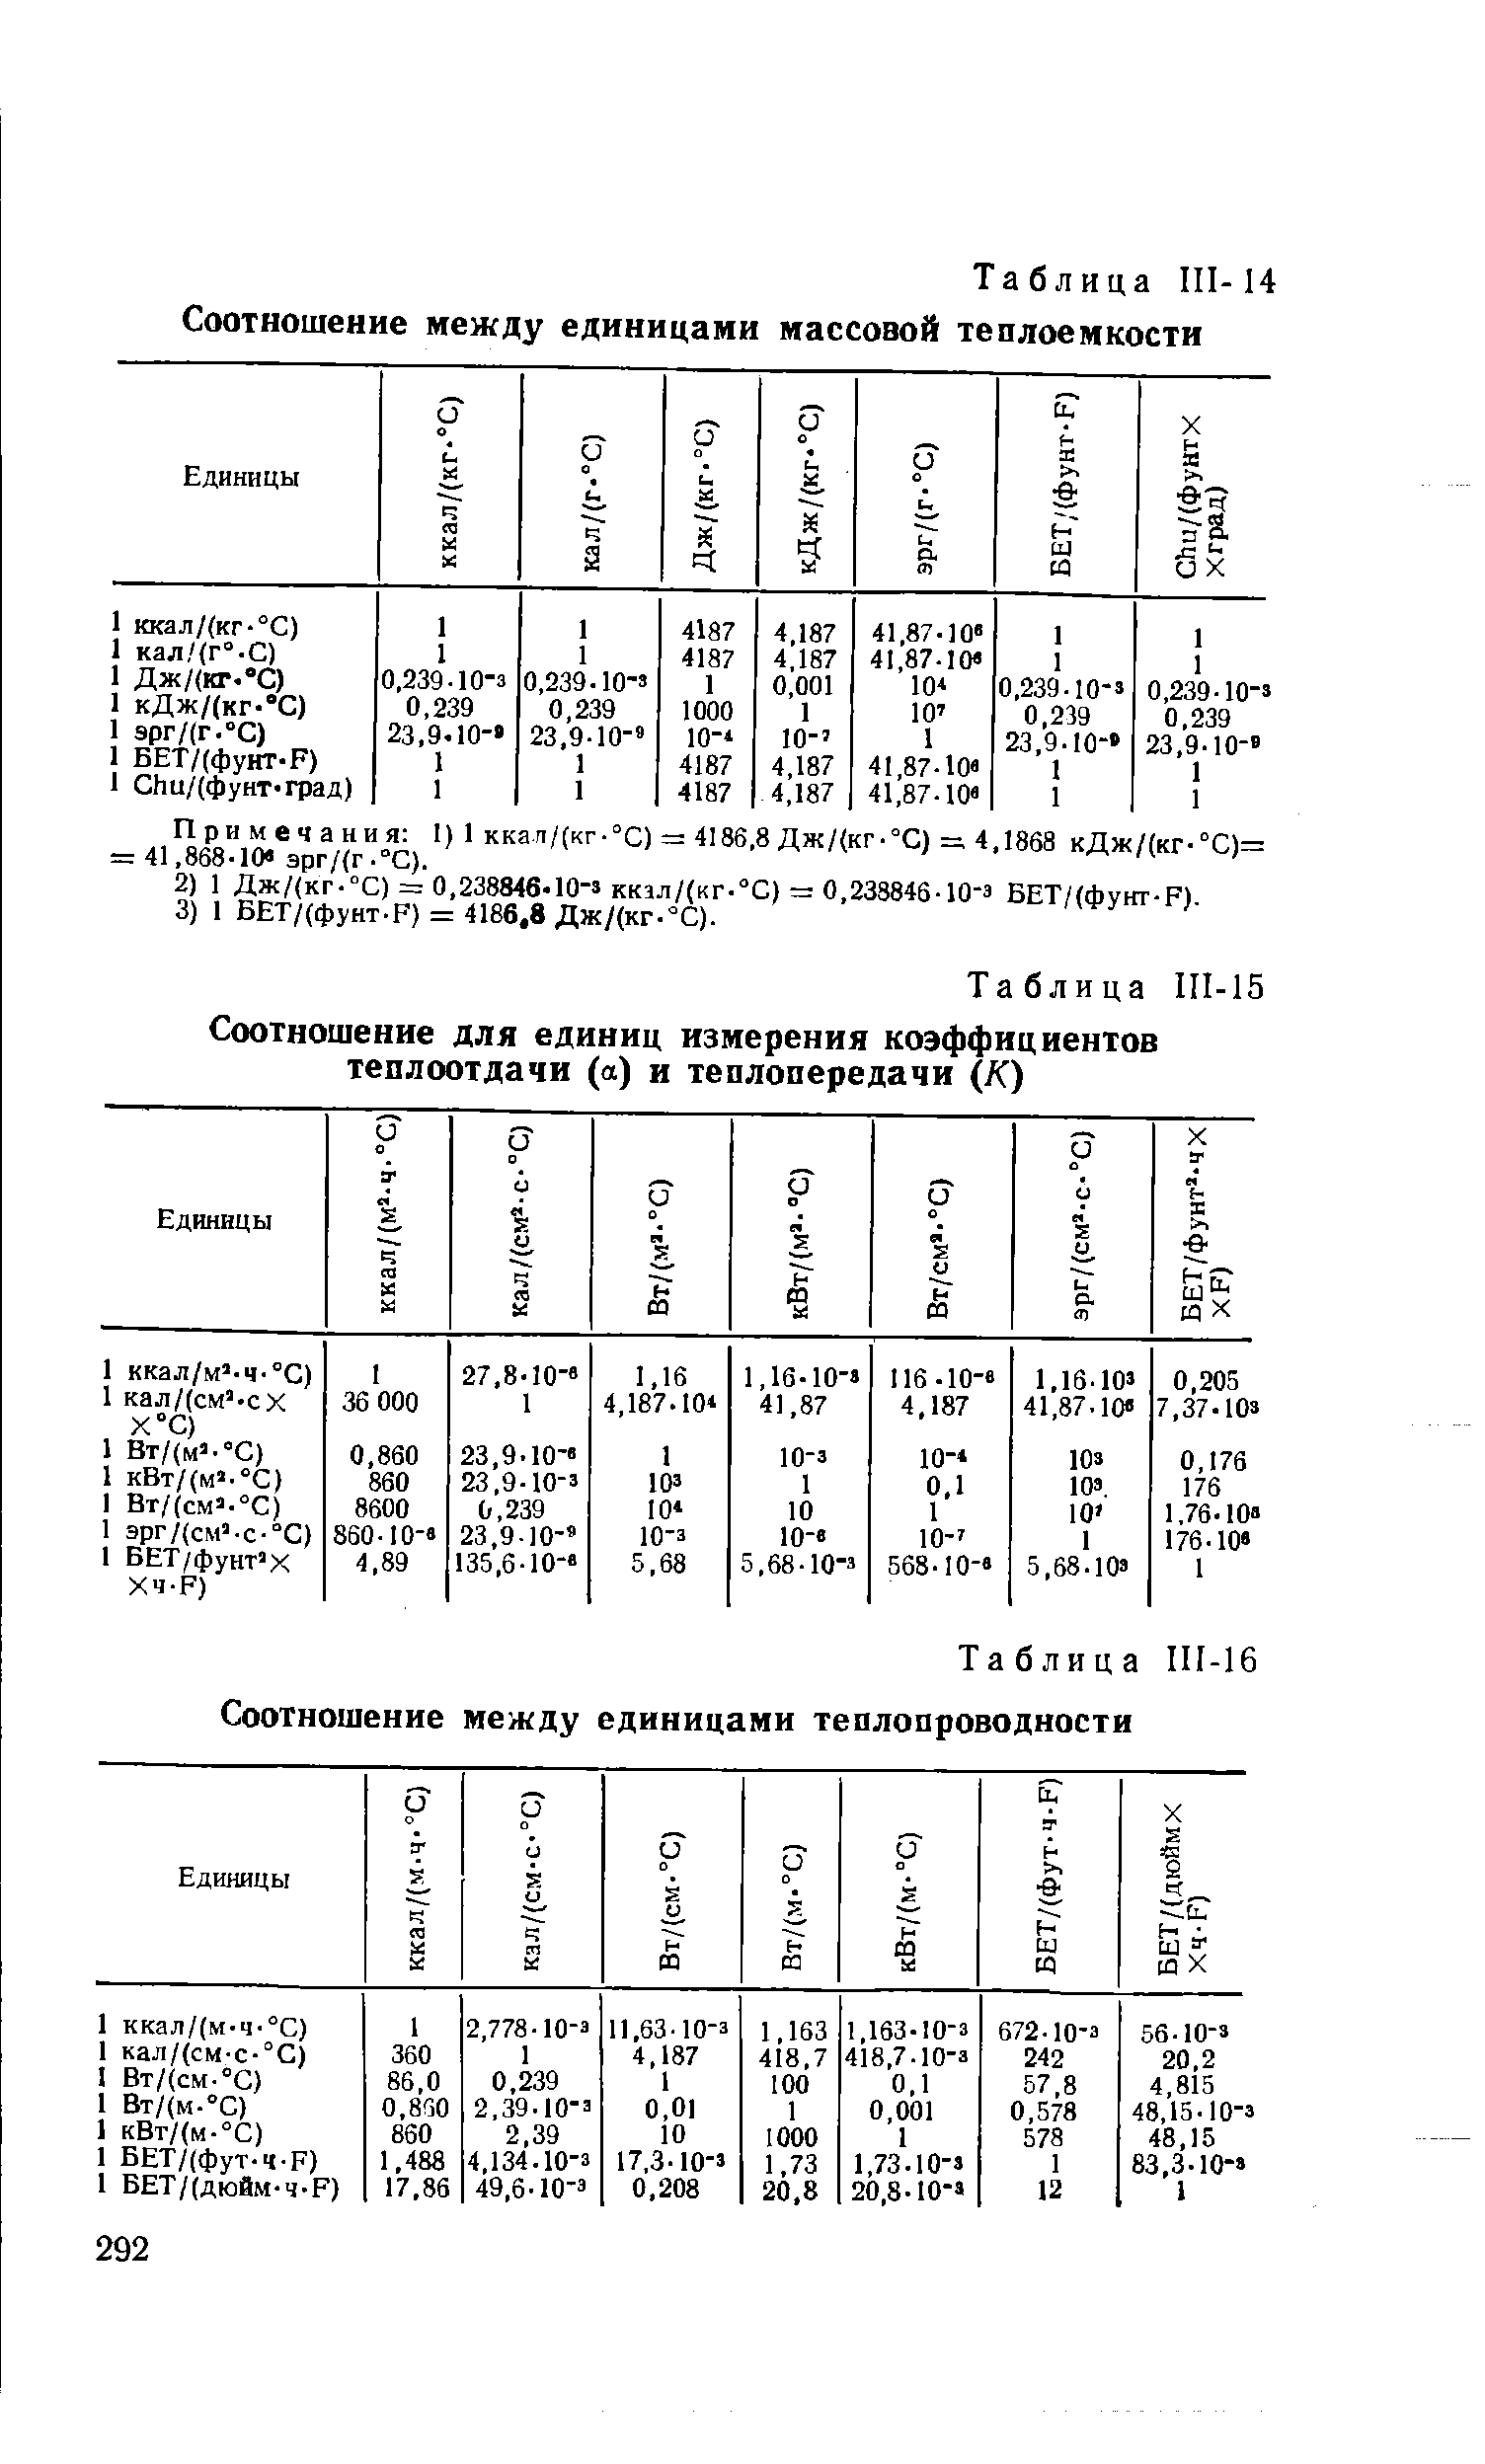 Таблица III-16 Соотношение между единицами теплопроводности
